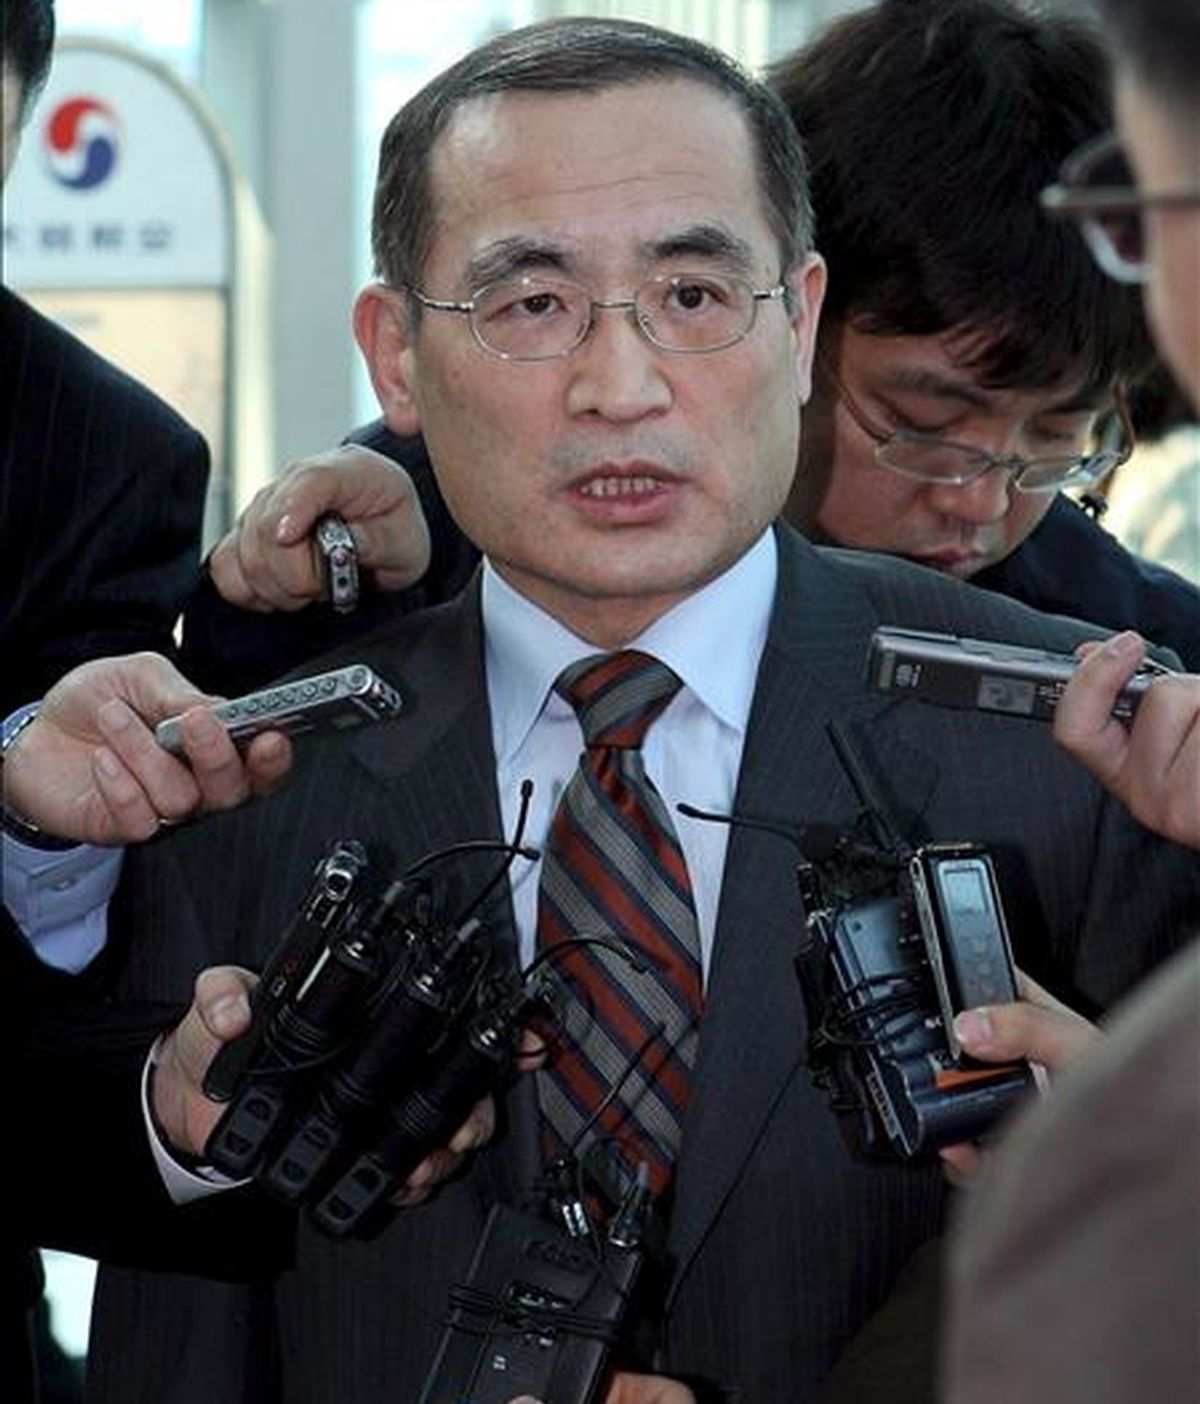 El delegado nuclear surcoreano, Wi Sung-lac, habla con los medios en el aeropuerto de incheon, al oeste de Seúl (Corea del Sur), a su llegada de Washington, el 1 de abril de 2009. EFE